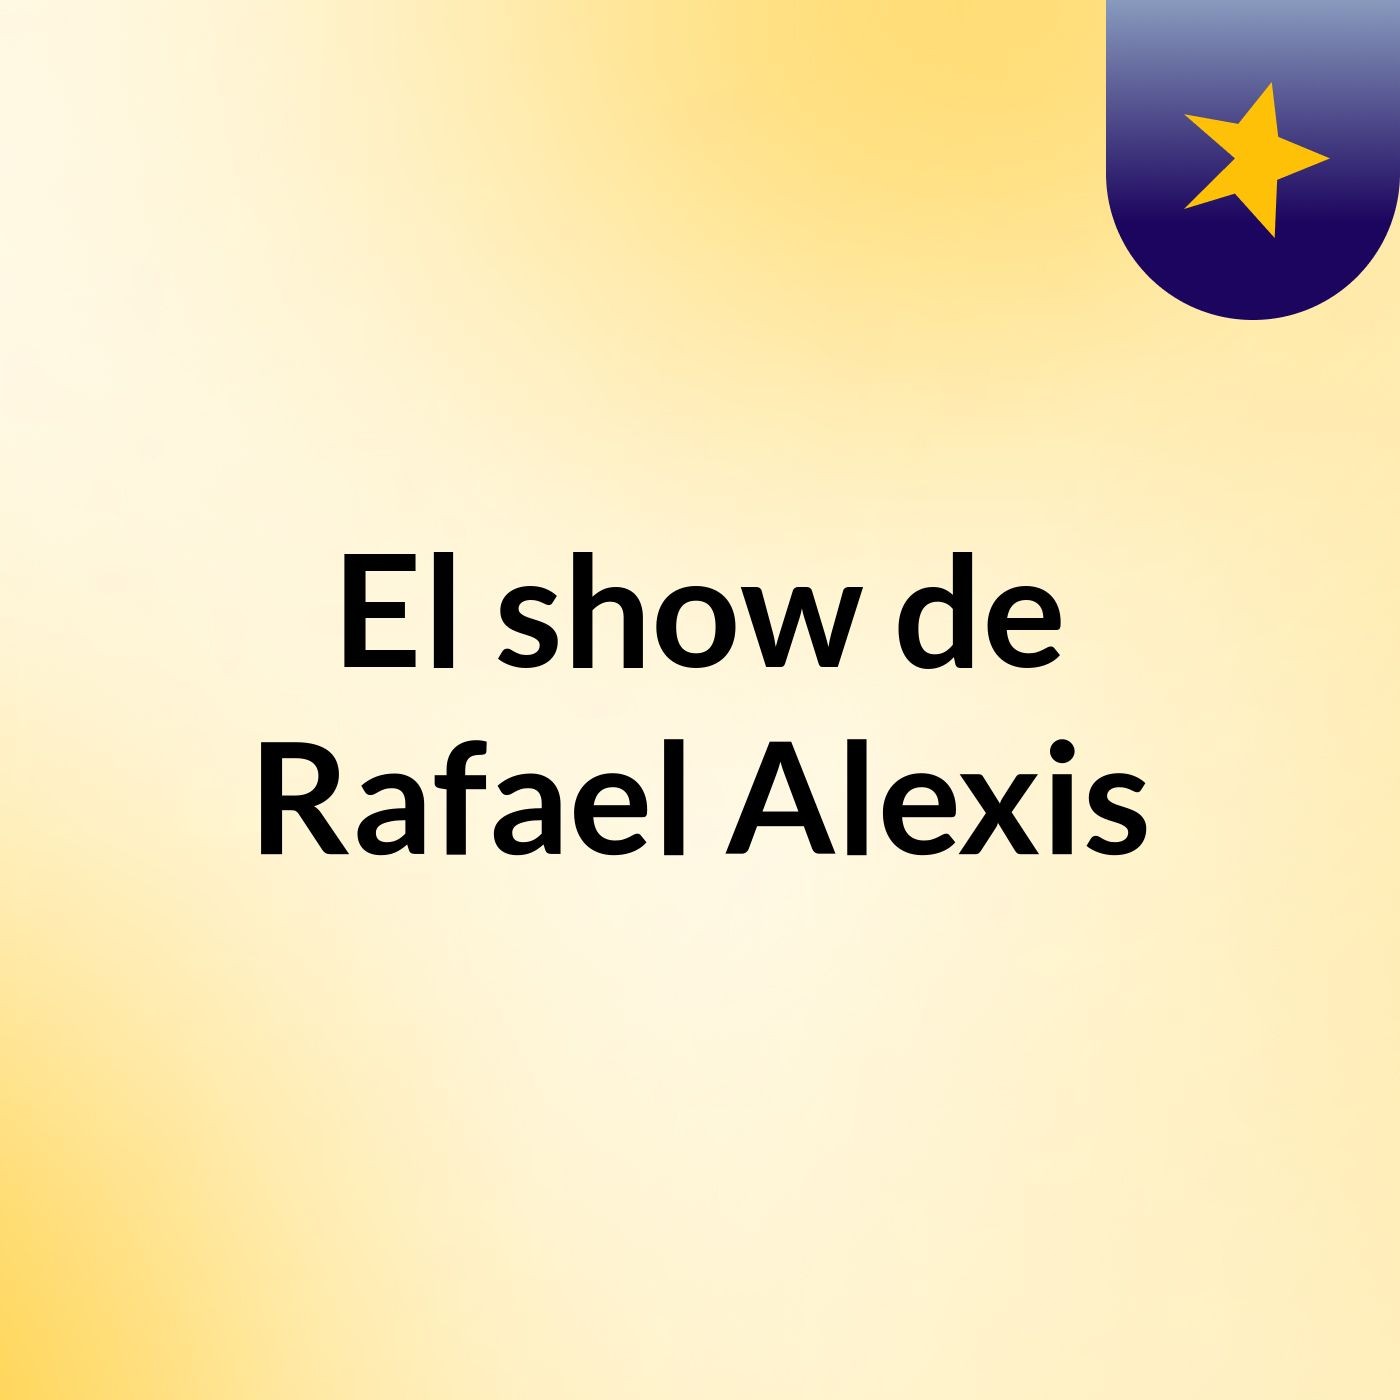 Episodio 1 - El show de Rafael Alexis